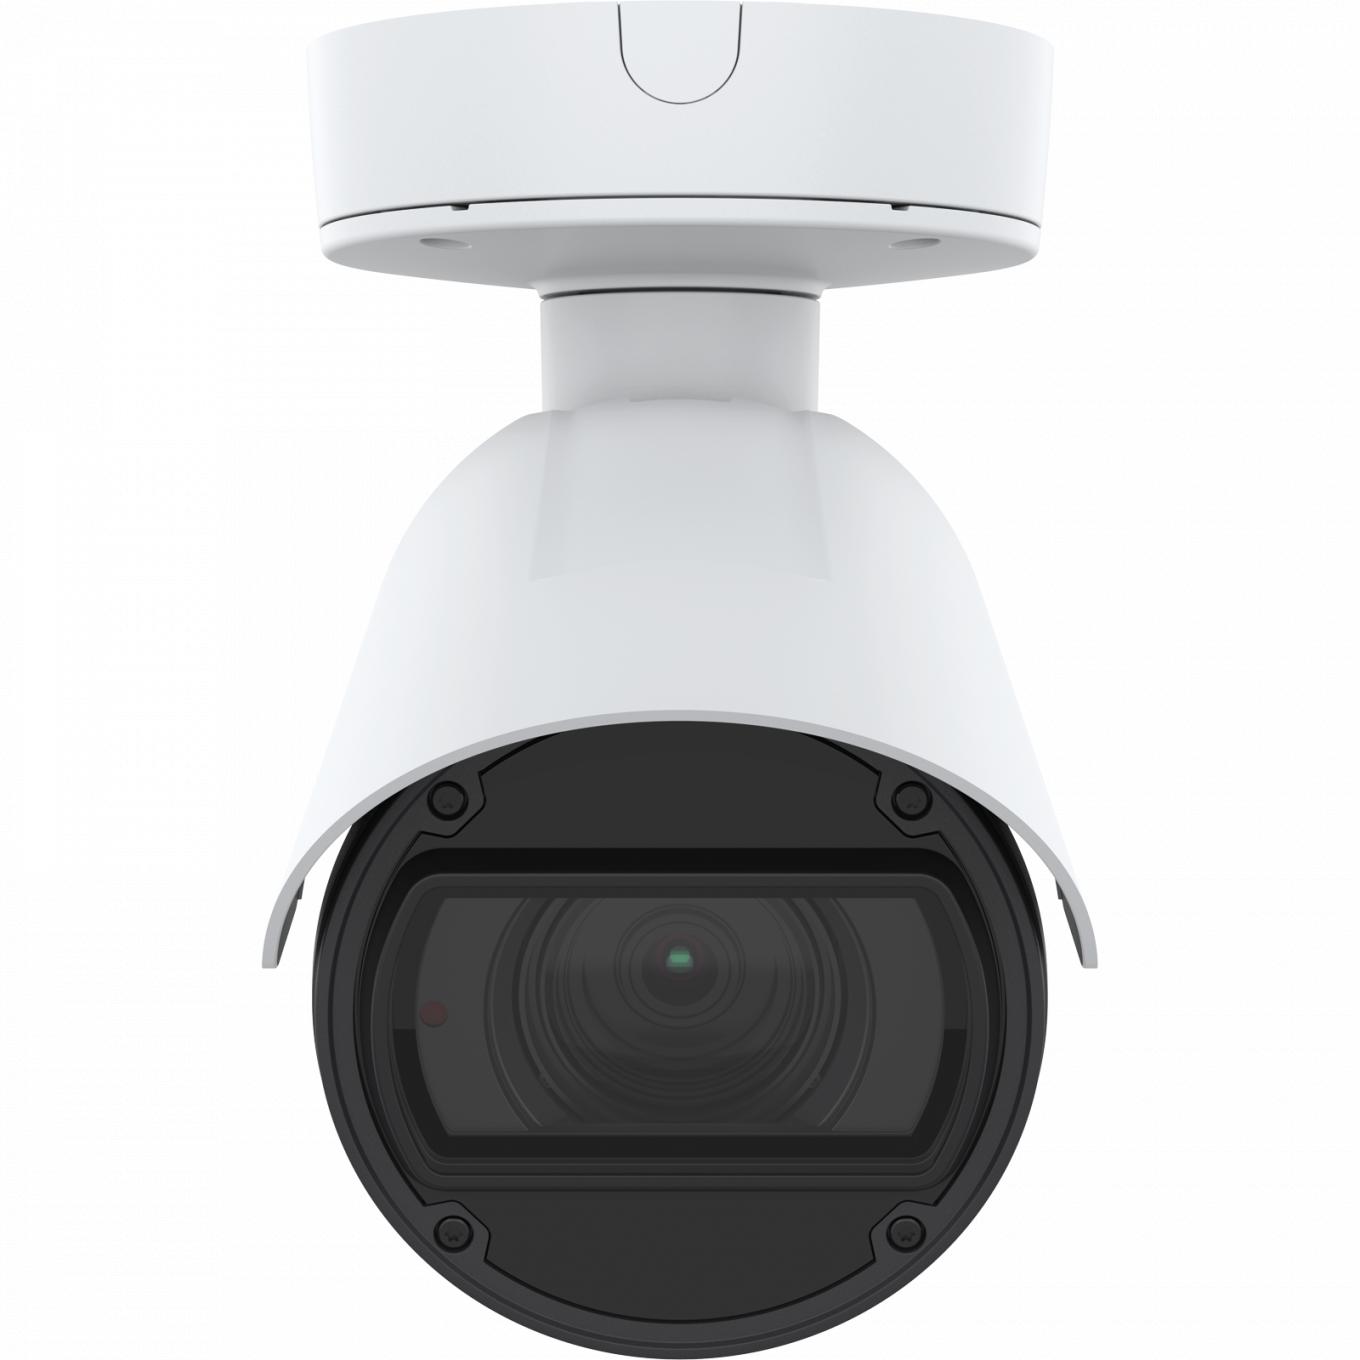 La AXIS Q1785-LE IP Camera tiene OptimizedIR. El producto se muestra con vista frontal.